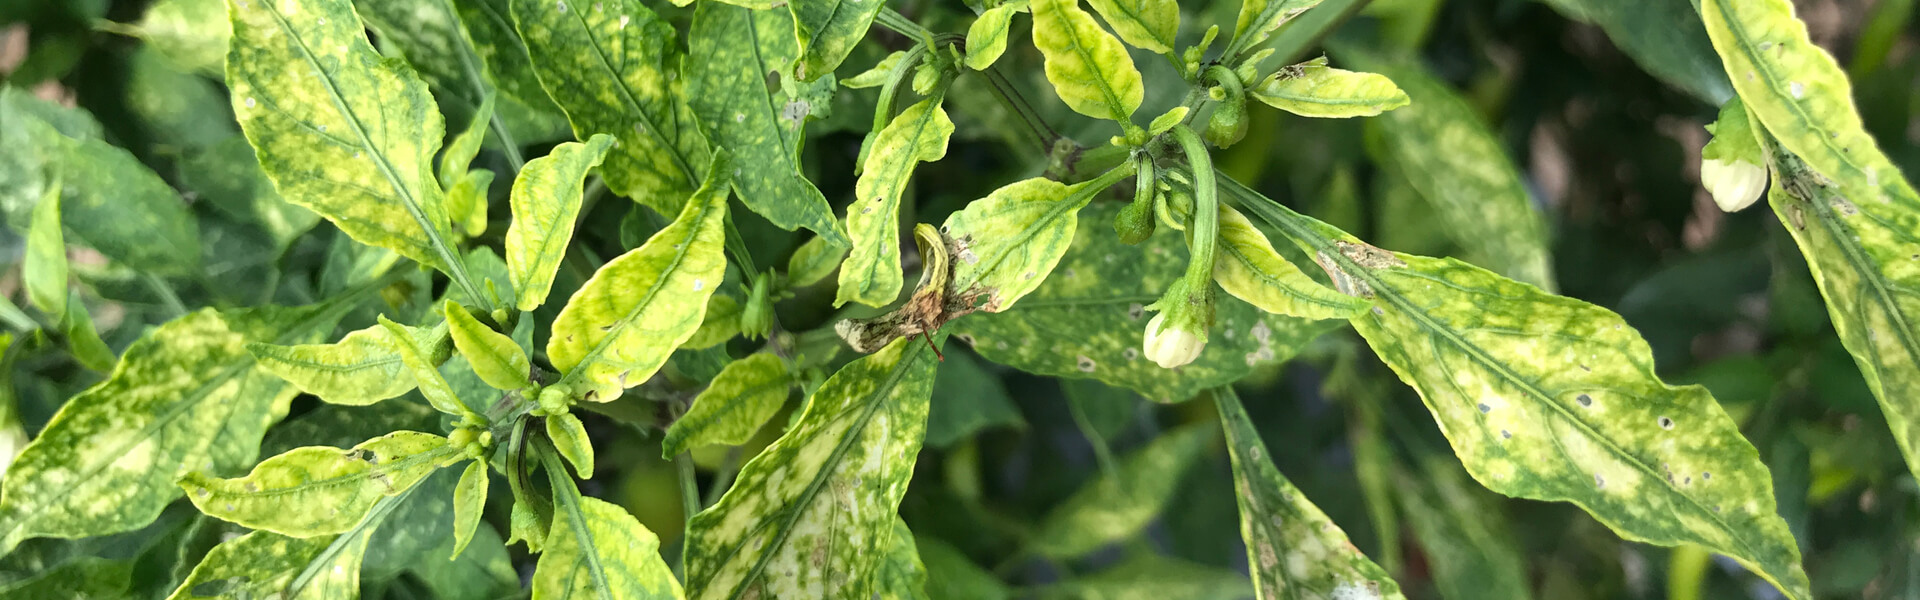 nutrient deficiency symptoms on hot pepper leaves